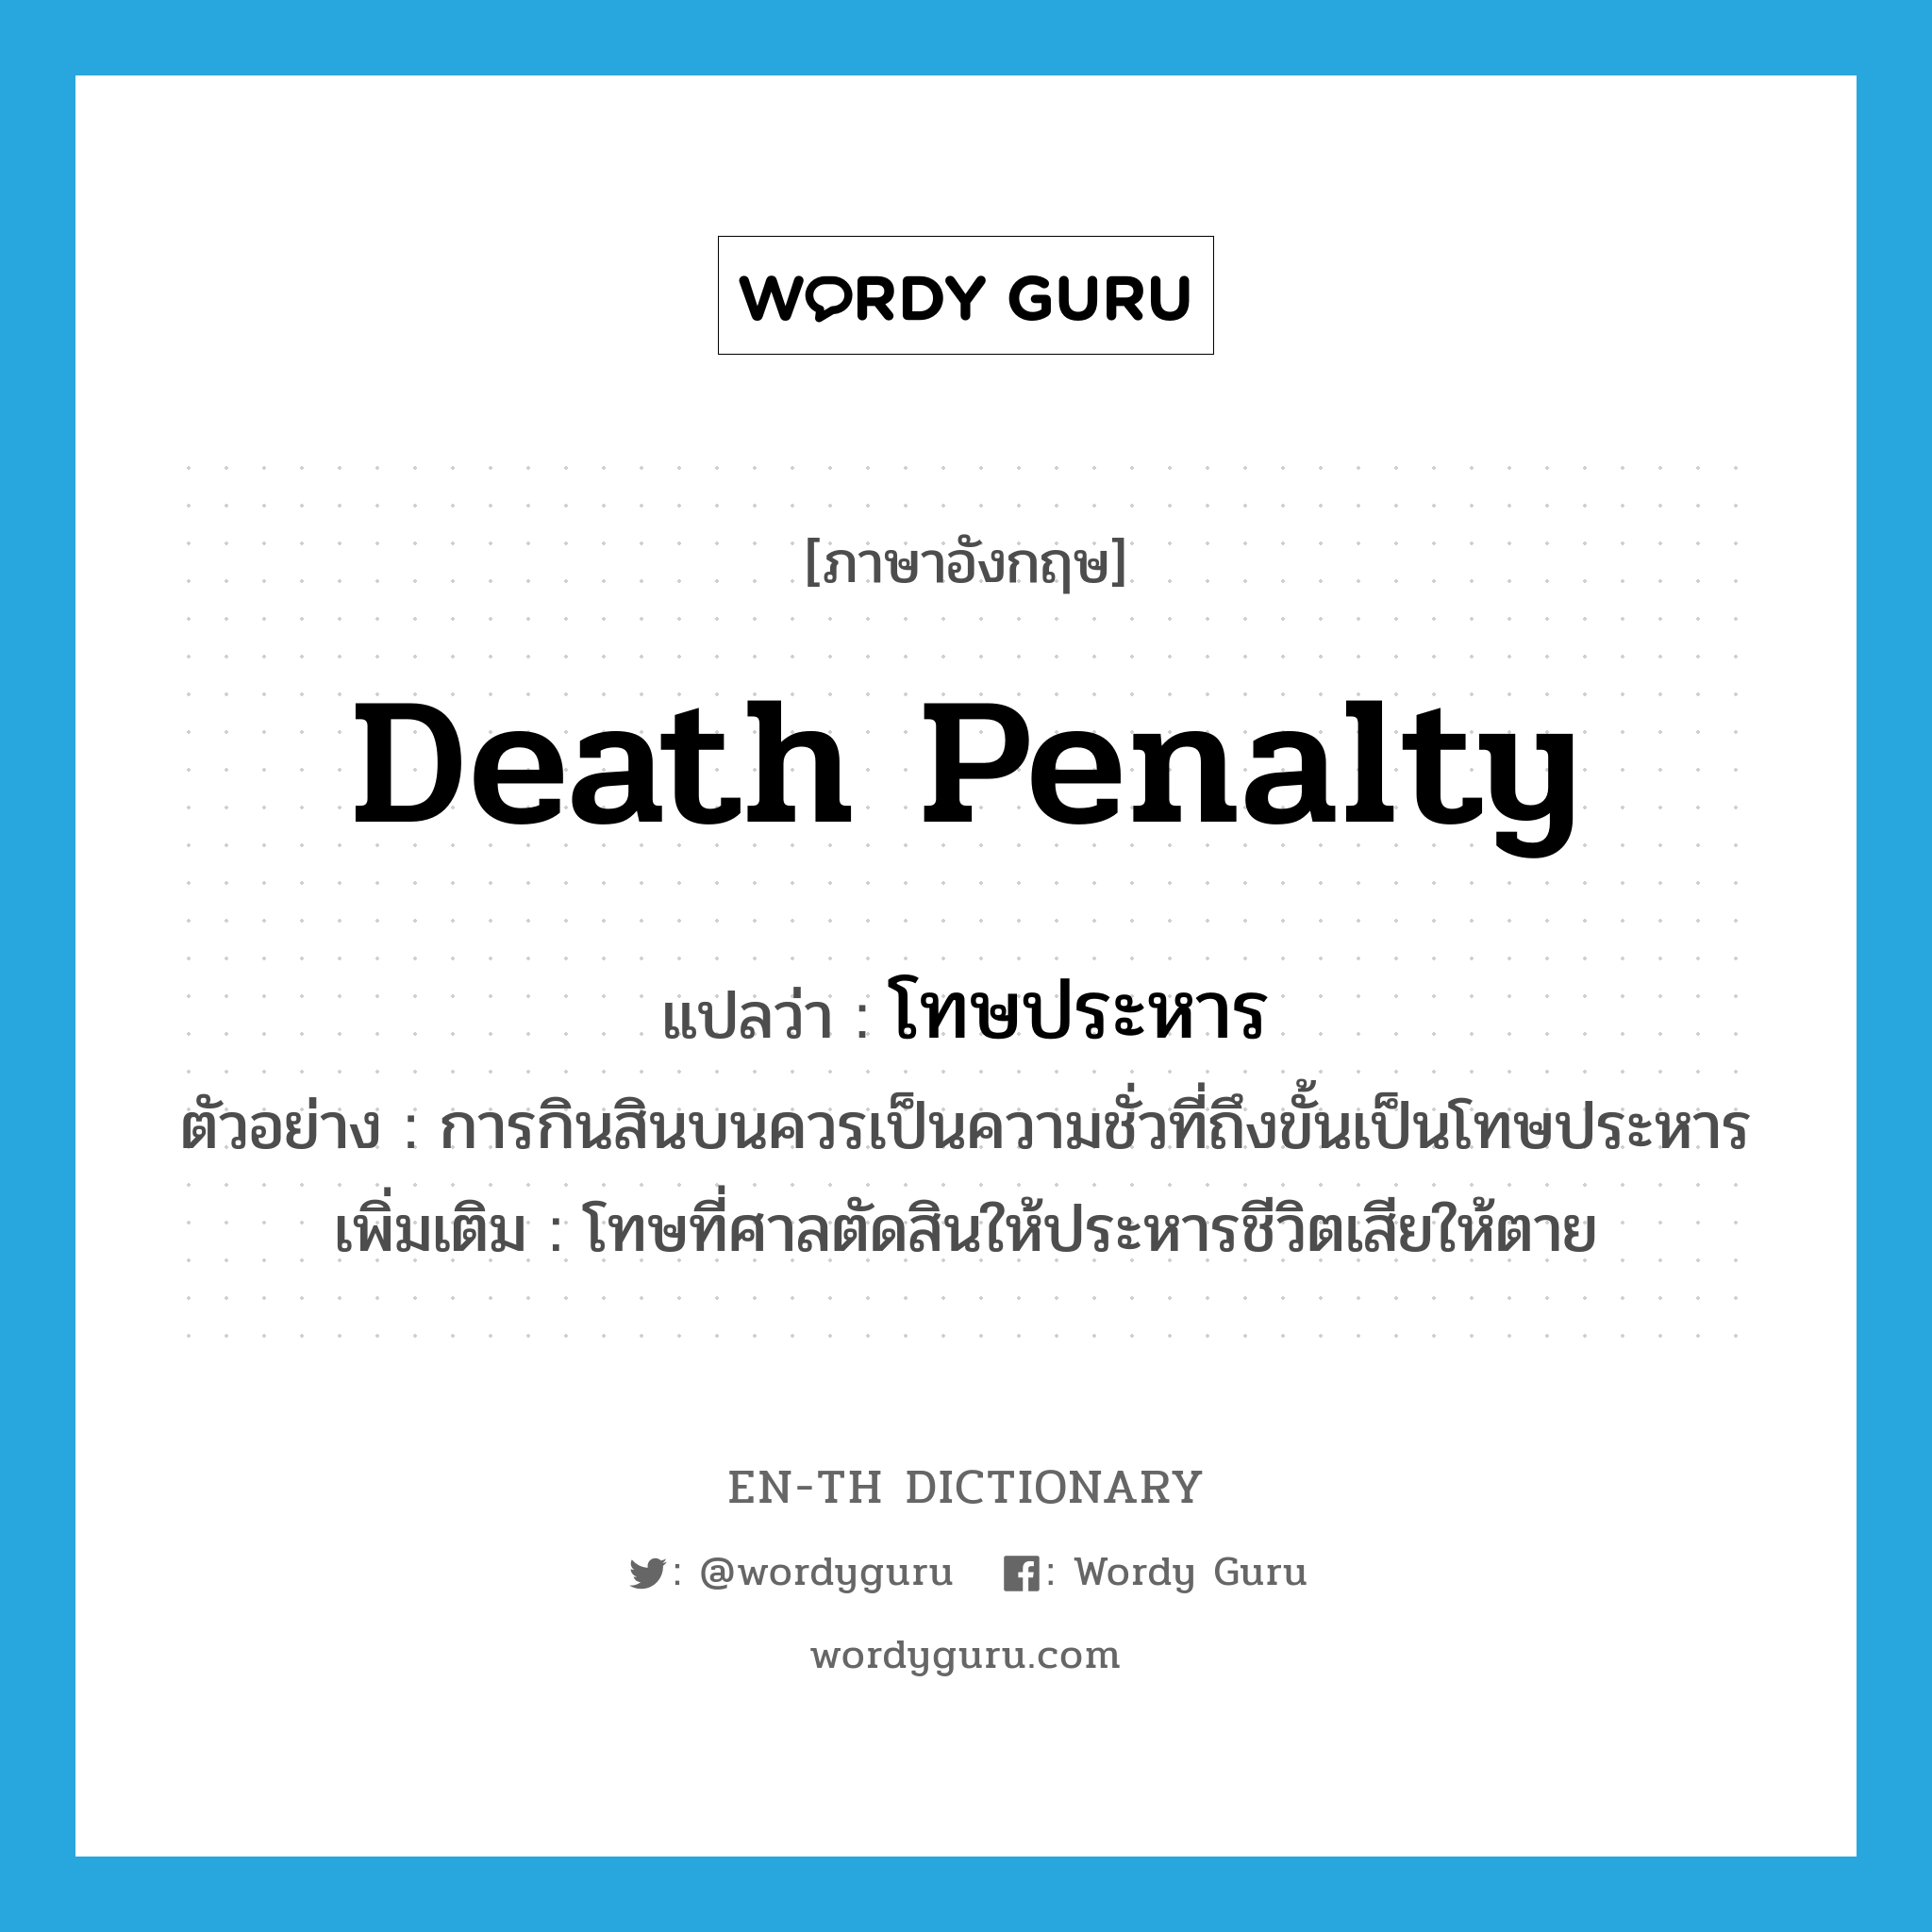 โทษประหาร ภาษาอังกฤษ?, คำศัพท์ภาษาอังกฤษ โทษประหาร แปลว่า death penalty ประเภท N ตัวอย่าง การกินสินบนควรเป็นความชั่วที่ถึงขั้นเป็นโทษประหาร เพิ่มเติม โทษที่ศาลตัดสินให้ประหารชีวิตเสียให้ตาย หมวด N